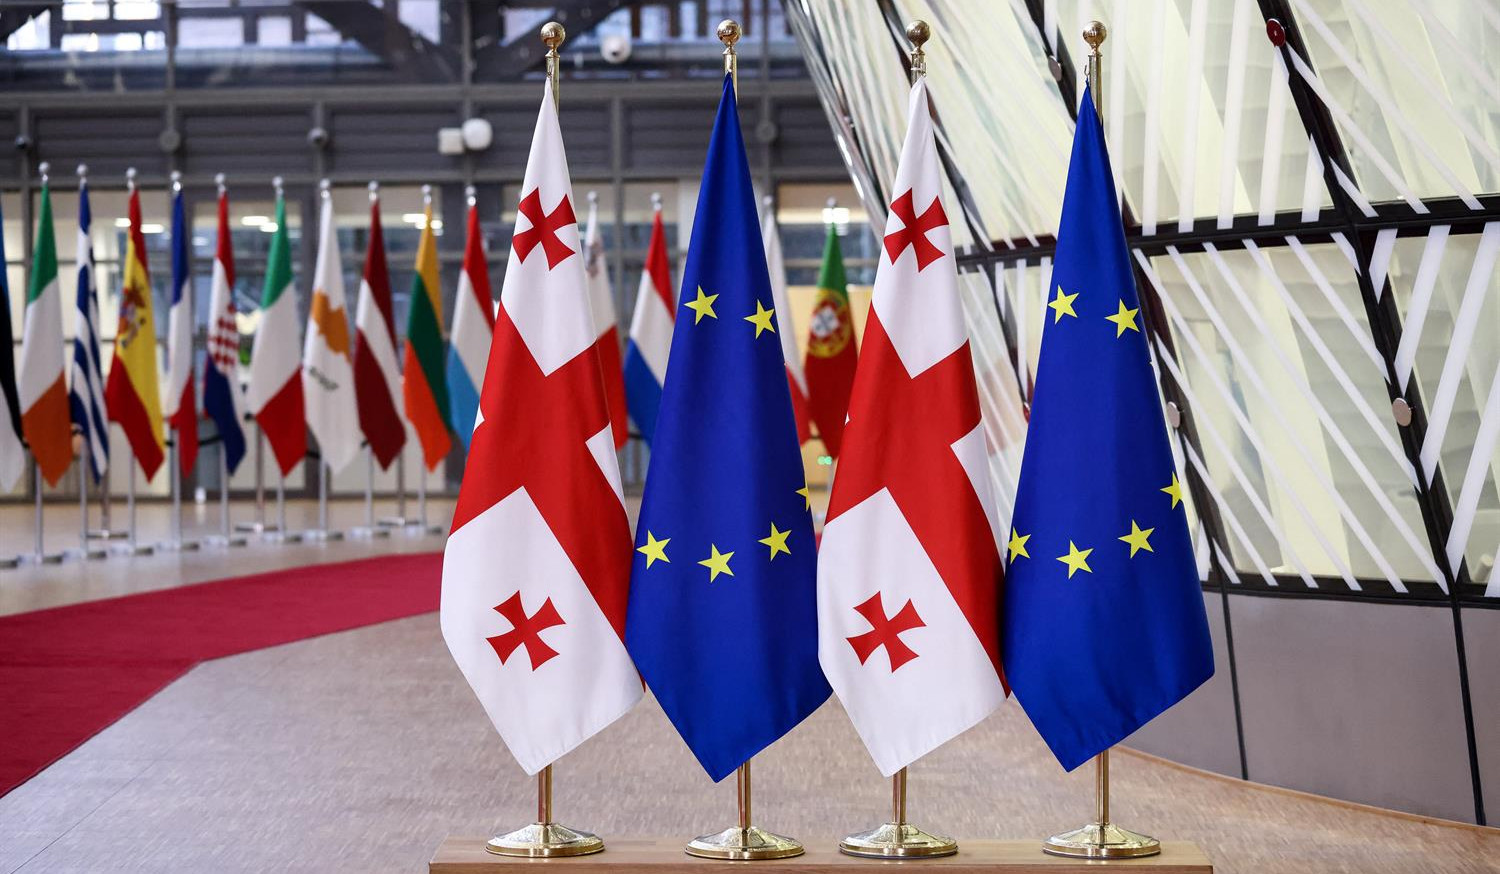 Վրաստանի գործողությունները հանգեցնում են ԵՄ-ին անդամակցության գործընթացի դե ֆակտո կանգնեցմանը․ հայտարարություն